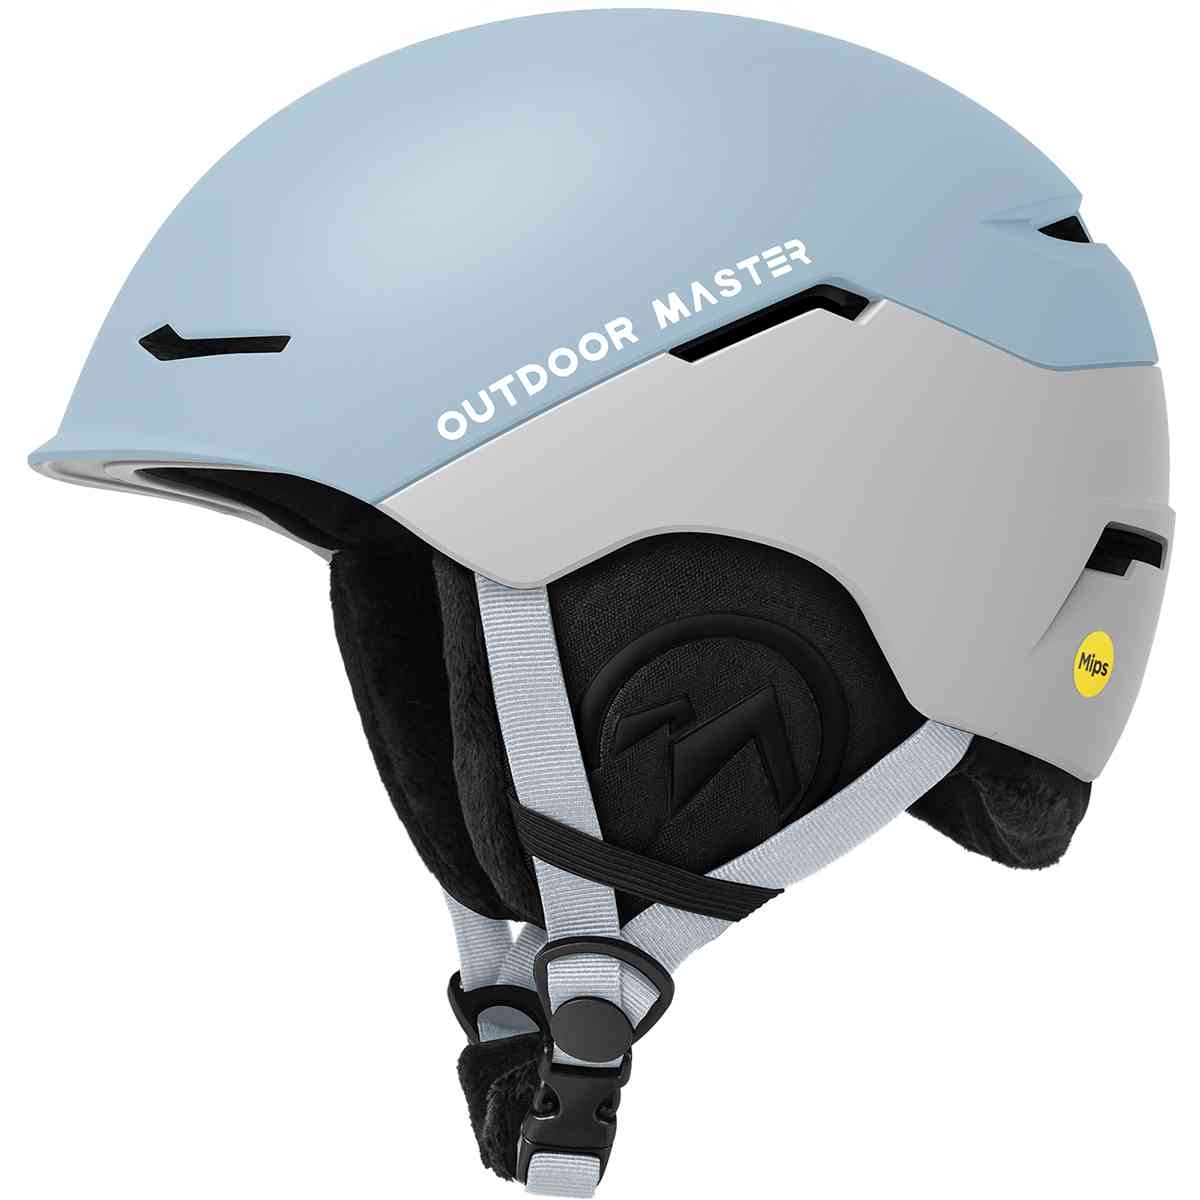 ELK MIPS Ski Helmet